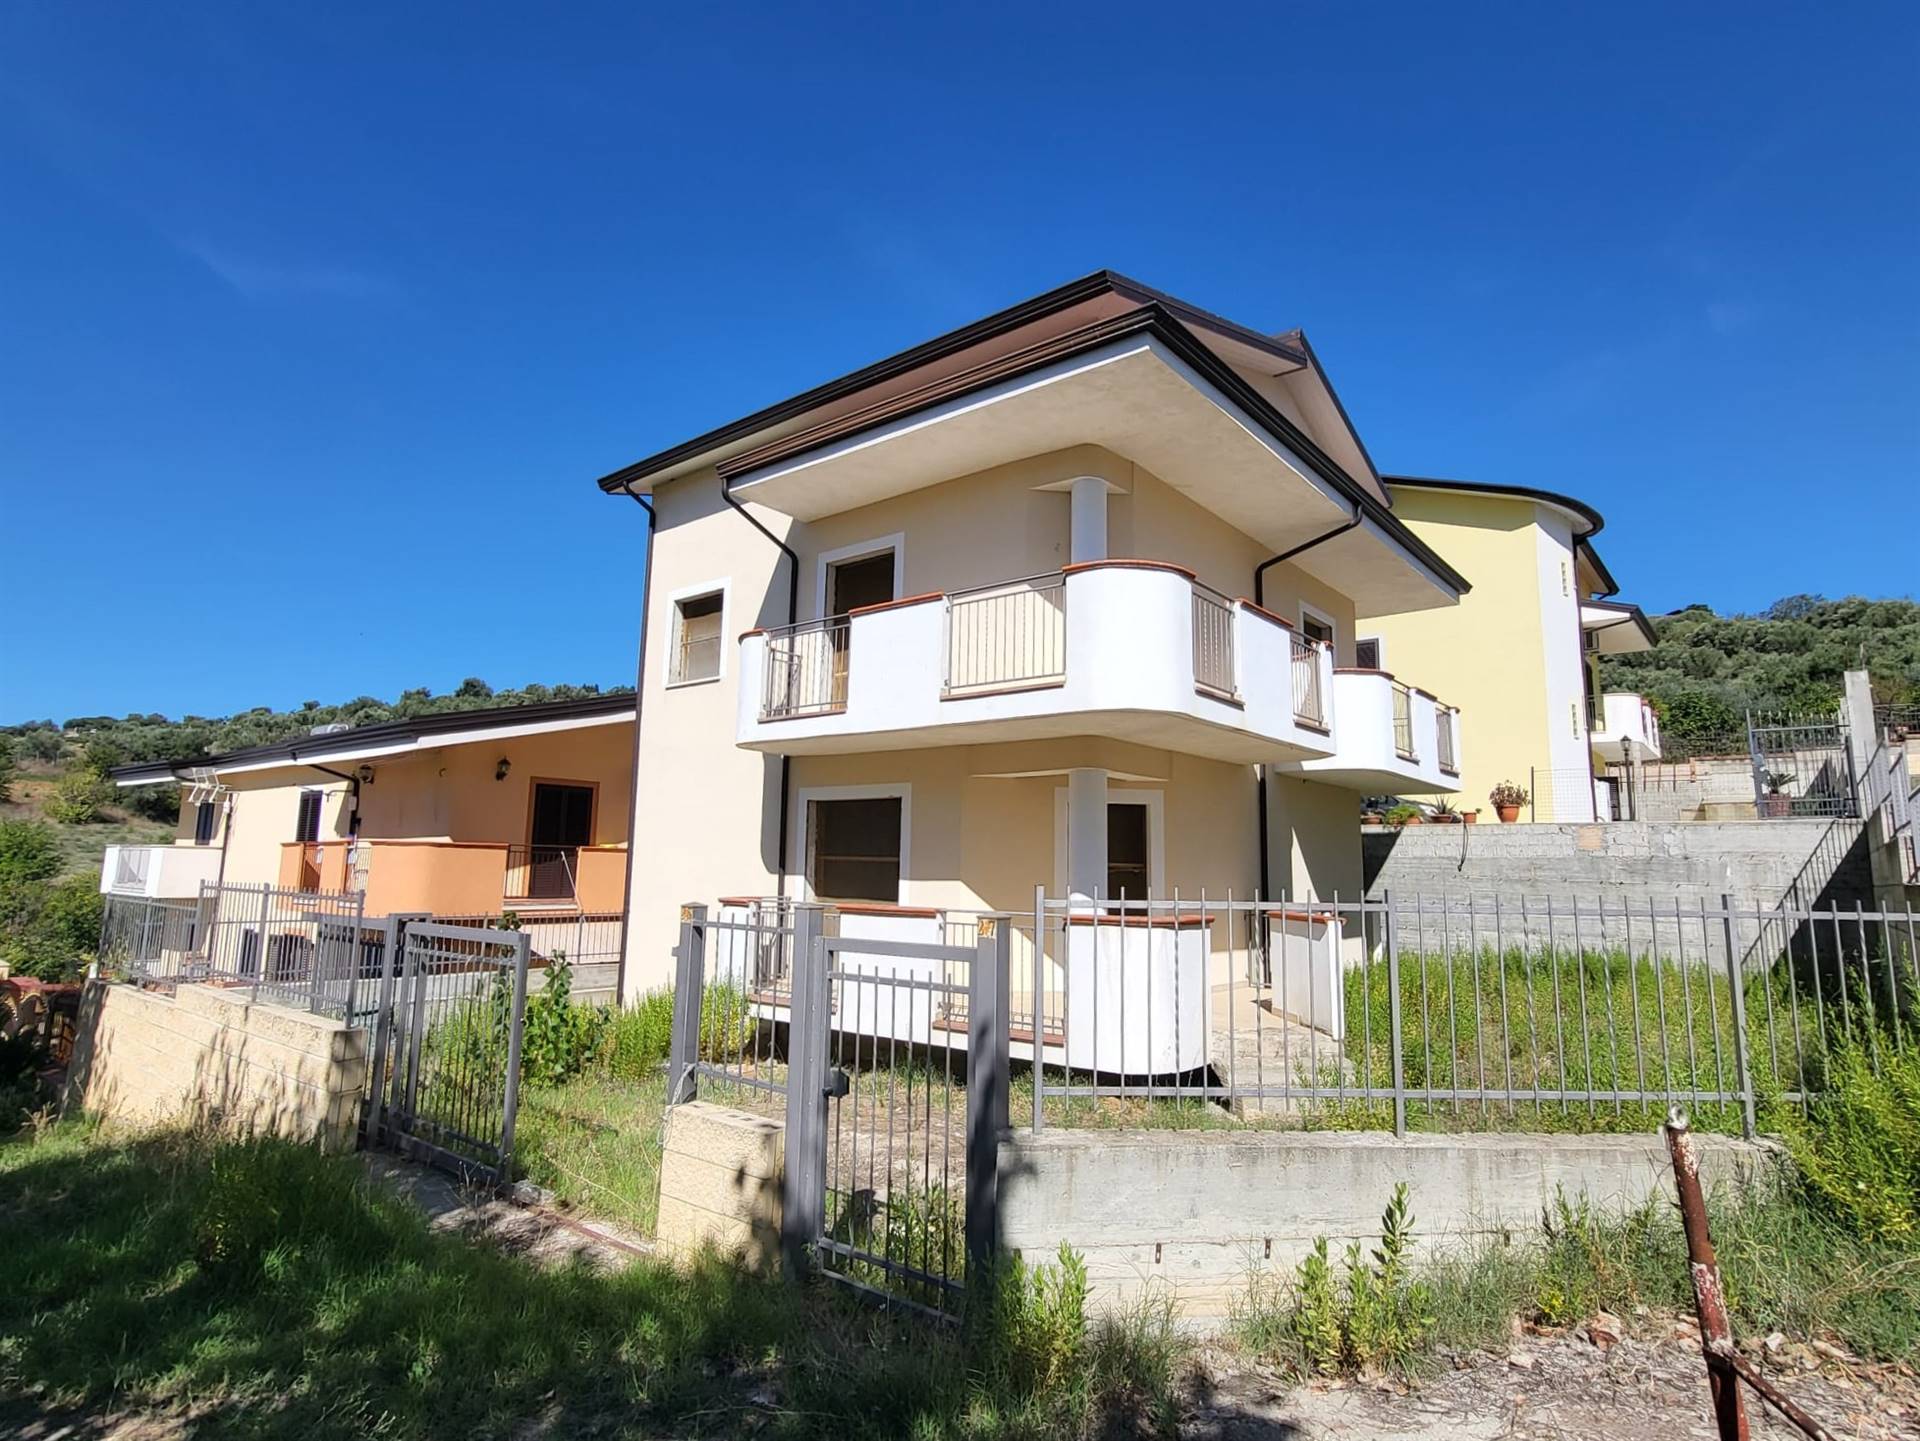 Villa in vendita a Montalto Uffugo, 5 locali, zona Località: STAZIONE DI MONTALTO, prezzo € 145.000 | CambioCasa.it